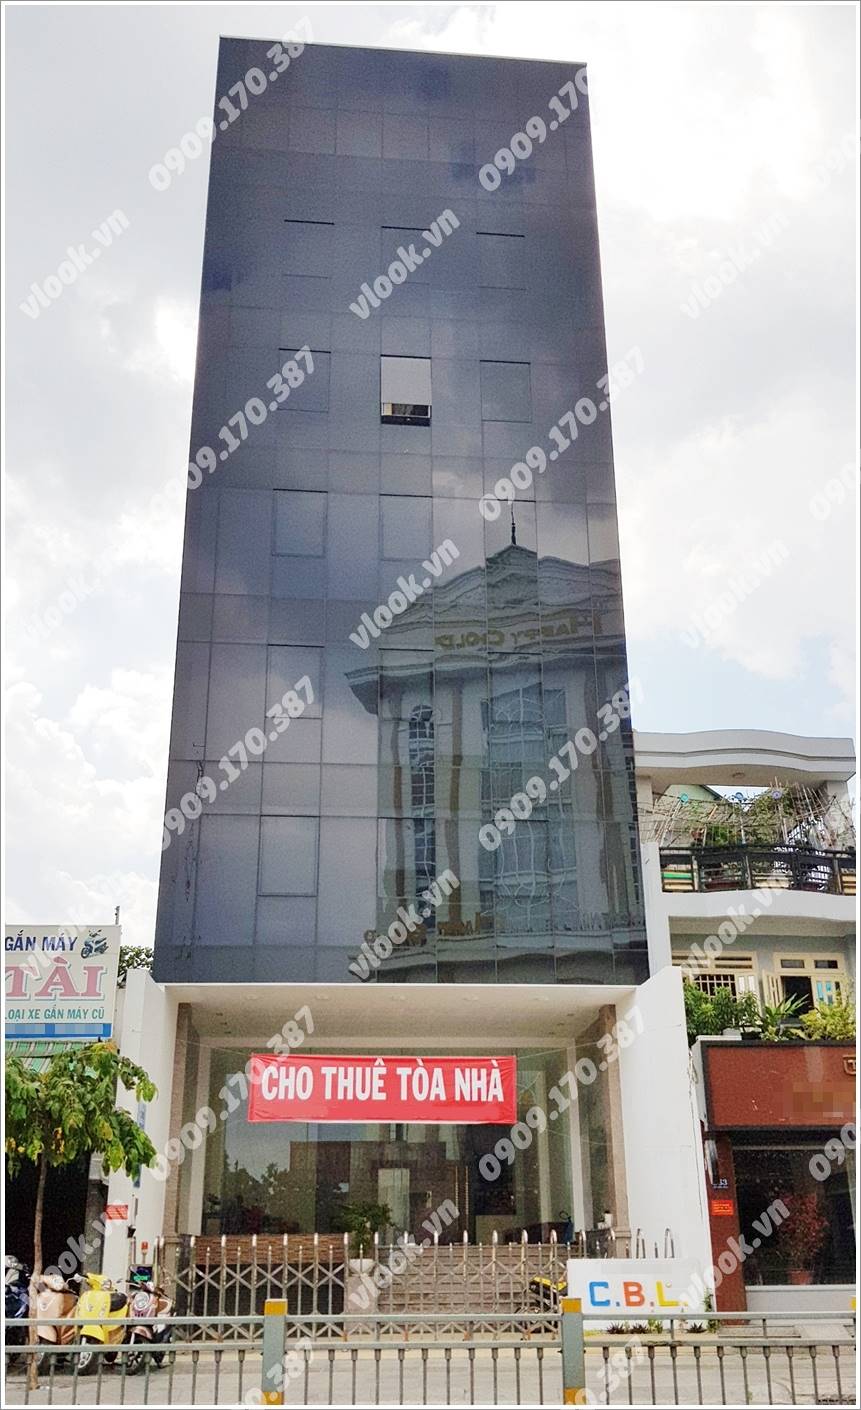 Cao ốc cho thuê văn phòng CBL Building, Lũy Bán Bích, Quận Tân Phú, TPHCM - vlook.vn